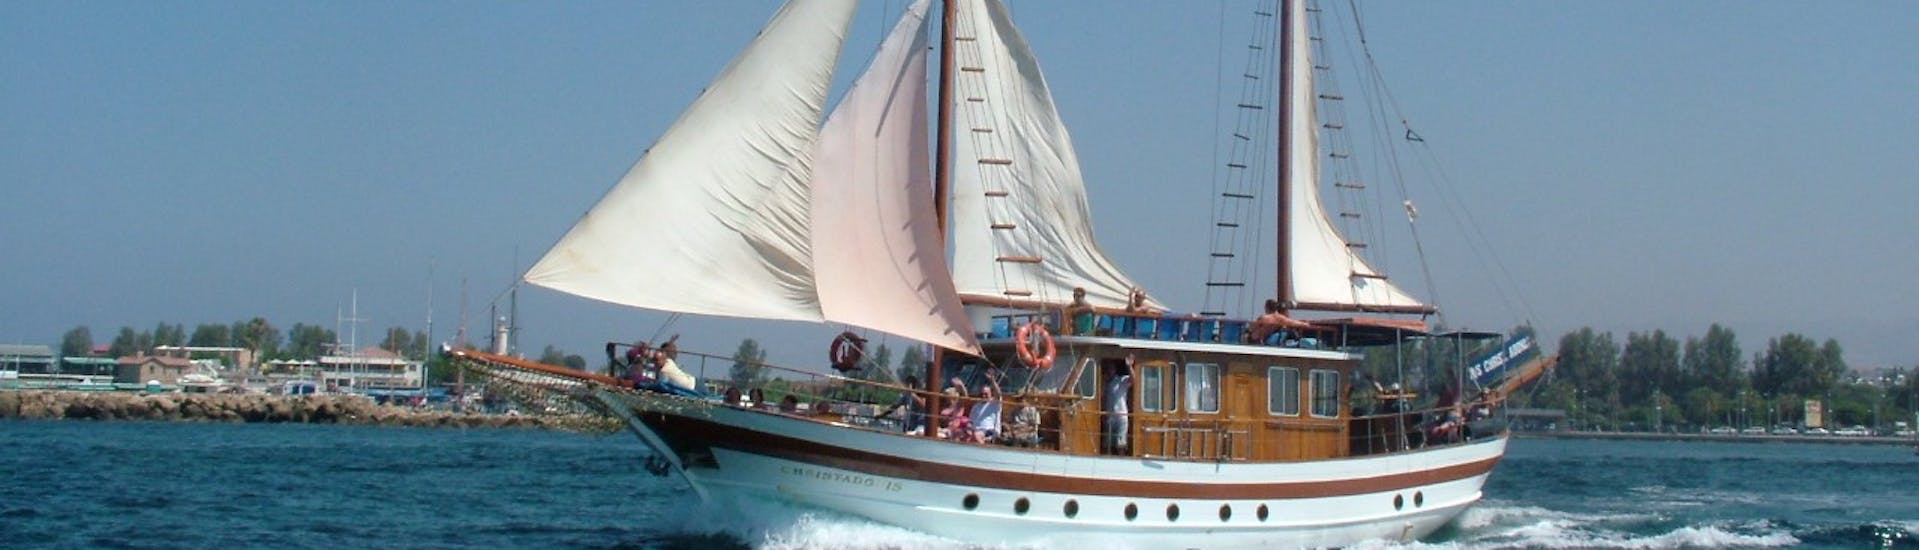 Foto der Segeltour von Paphos nach Coral Bay oder Timi.